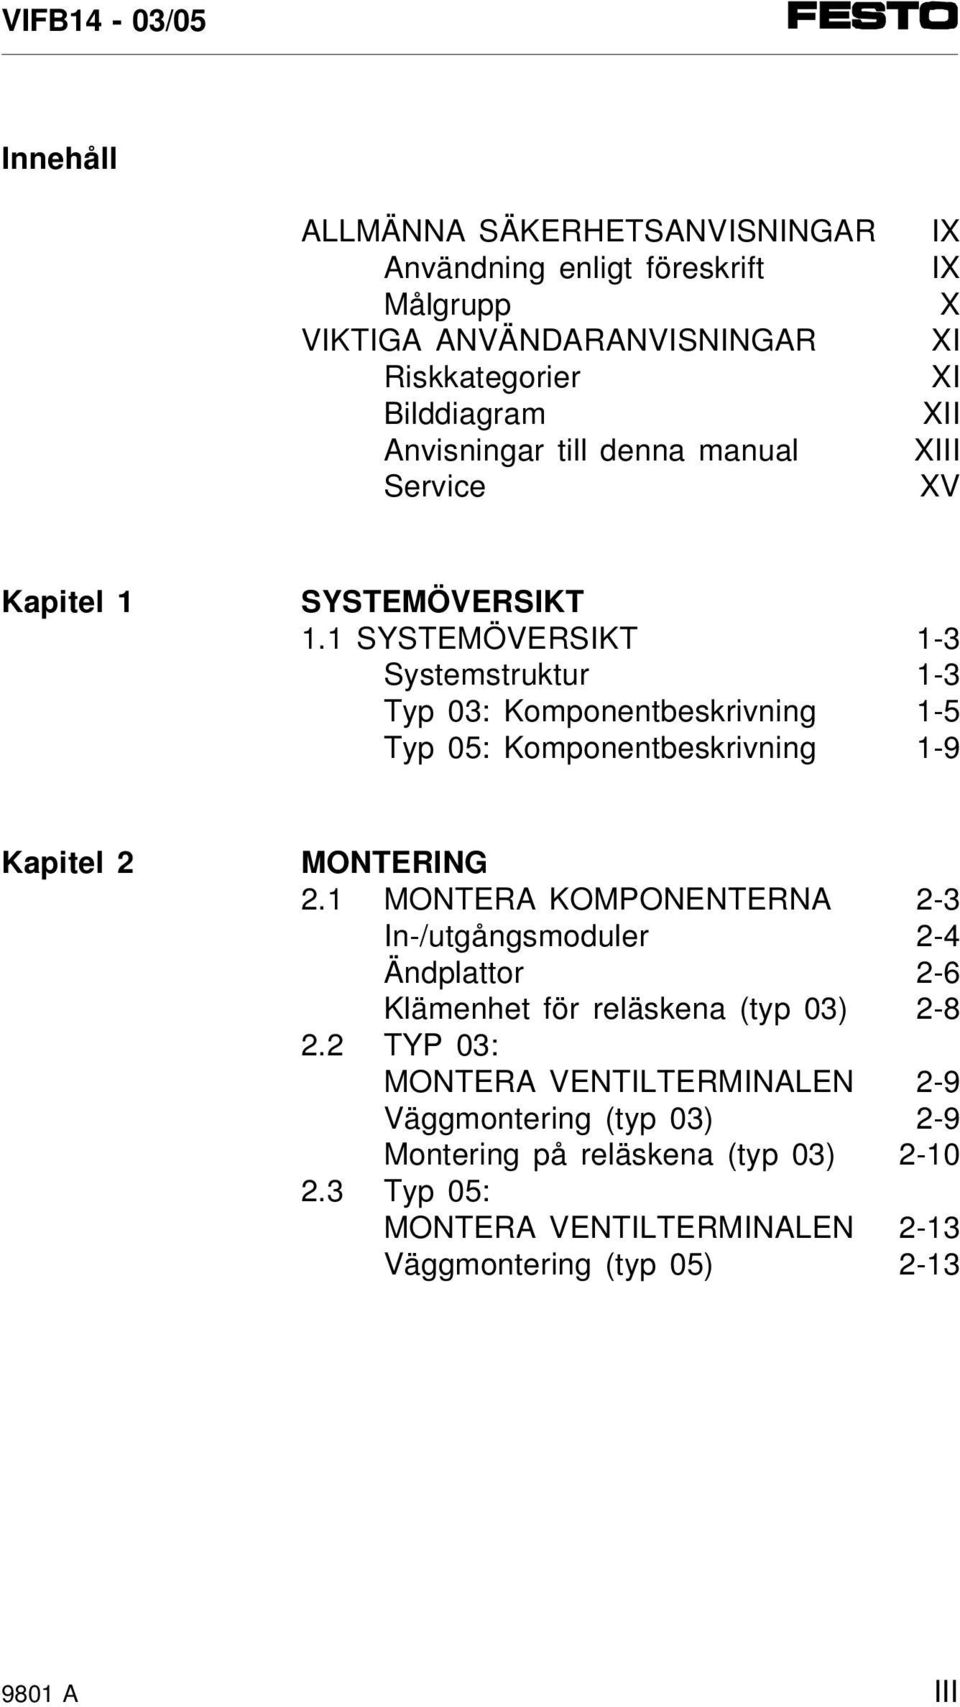 1 SYSTEMÖVERSIKT 1-3 Systemstruktur 1-3 Typ 03: Komponentbeskrivning 1-5 Typ 05: Komponentbeskrivning 1-9 Kapitel 2 MONTERING 2.